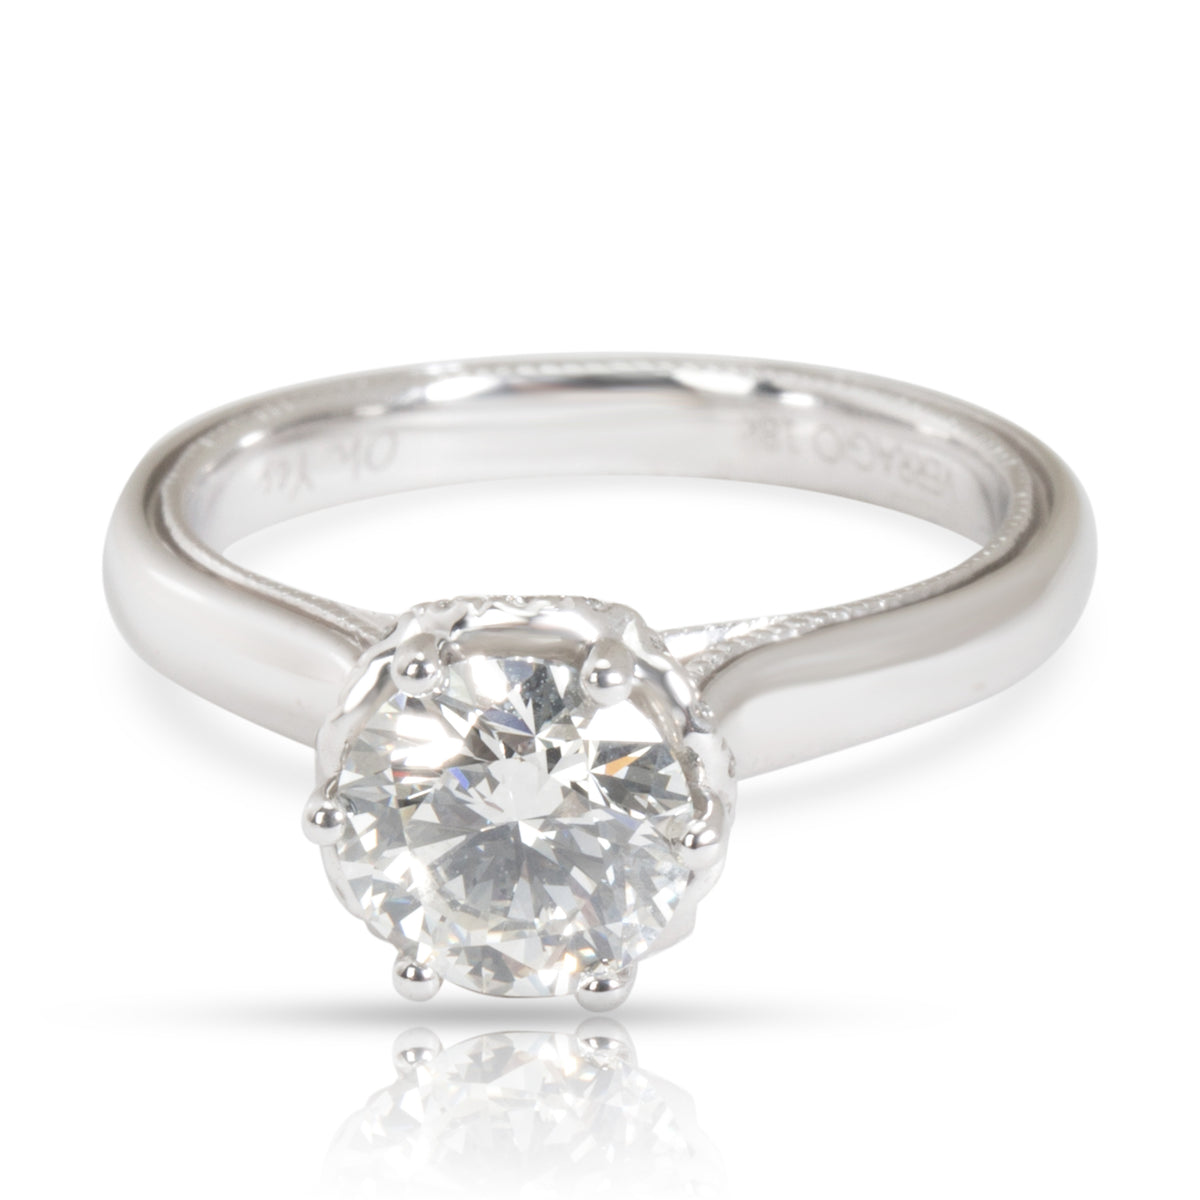 IGI Certified Verragio Diamond Engagement Ring in 18K White Gold I VVS2 1.11 CTW